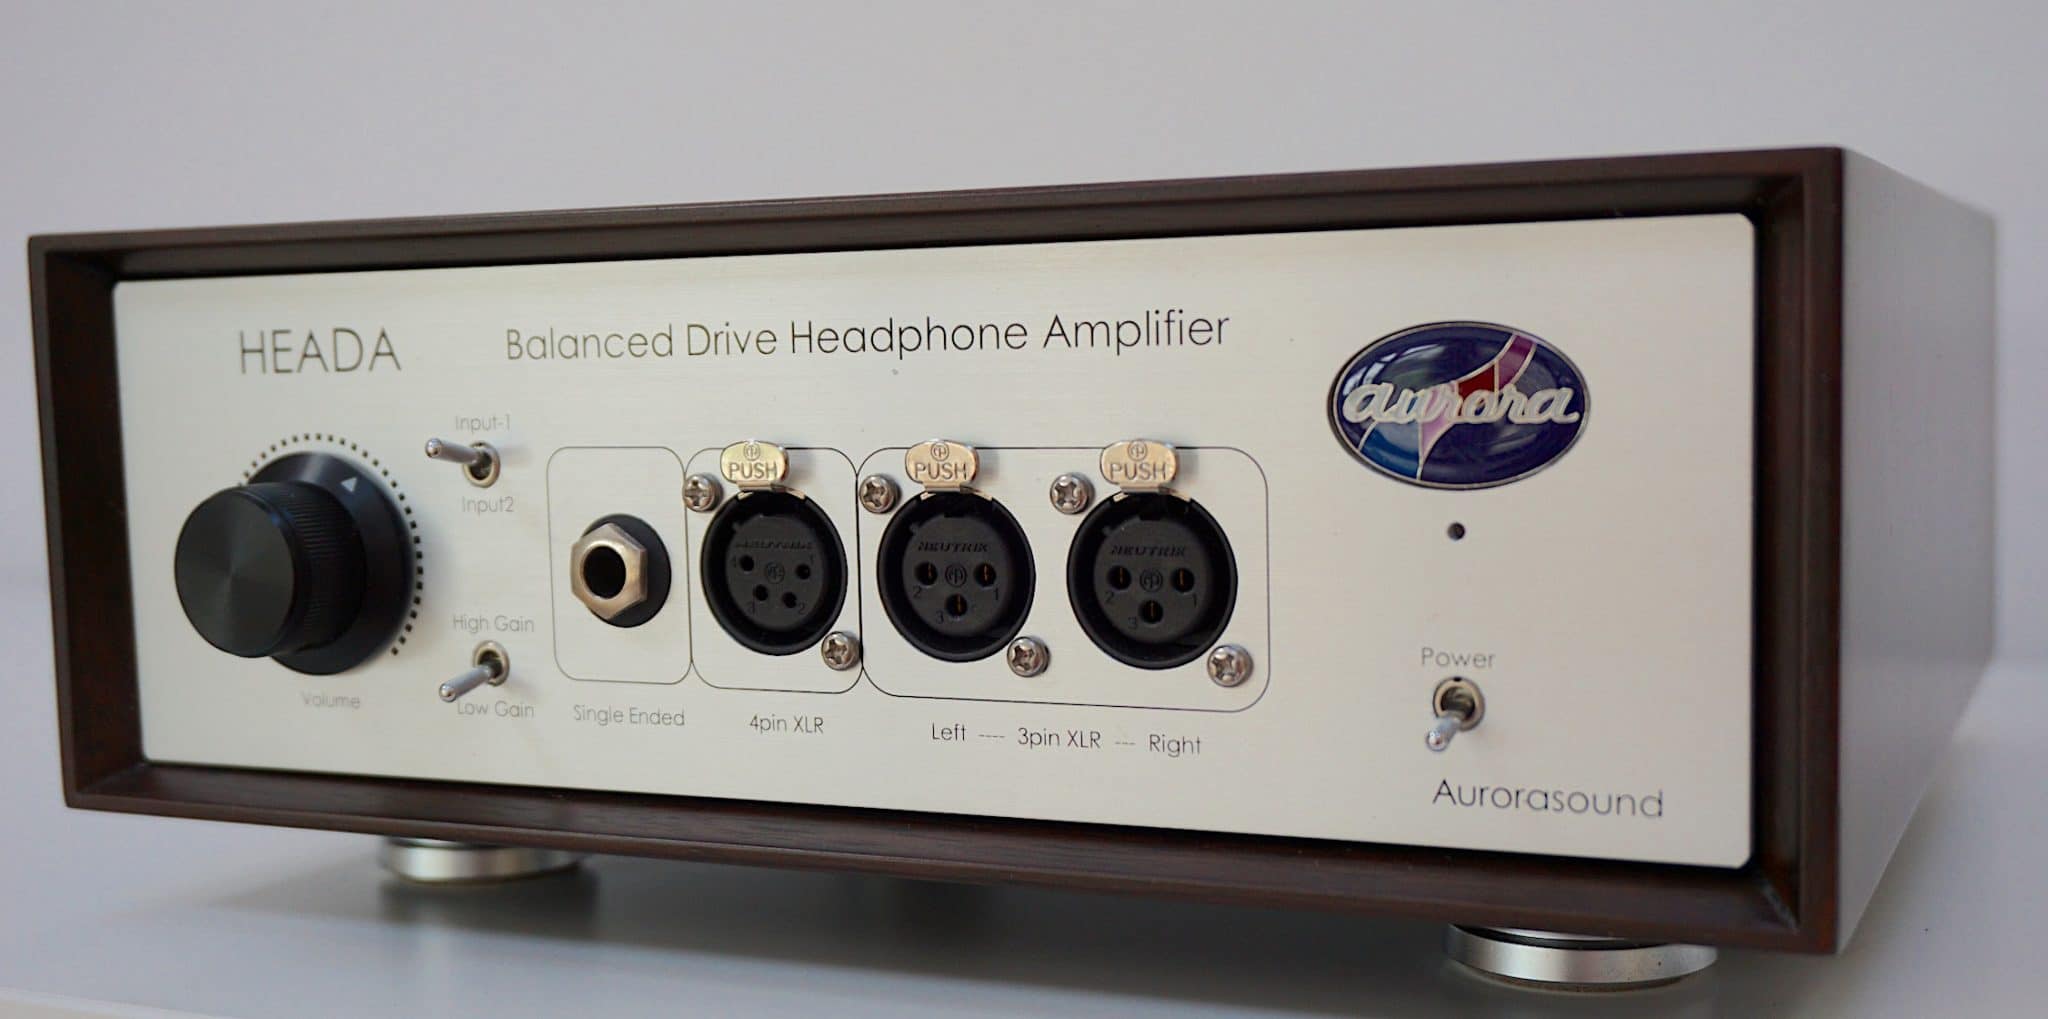 Heada headphone amplifier from Aurarasound 